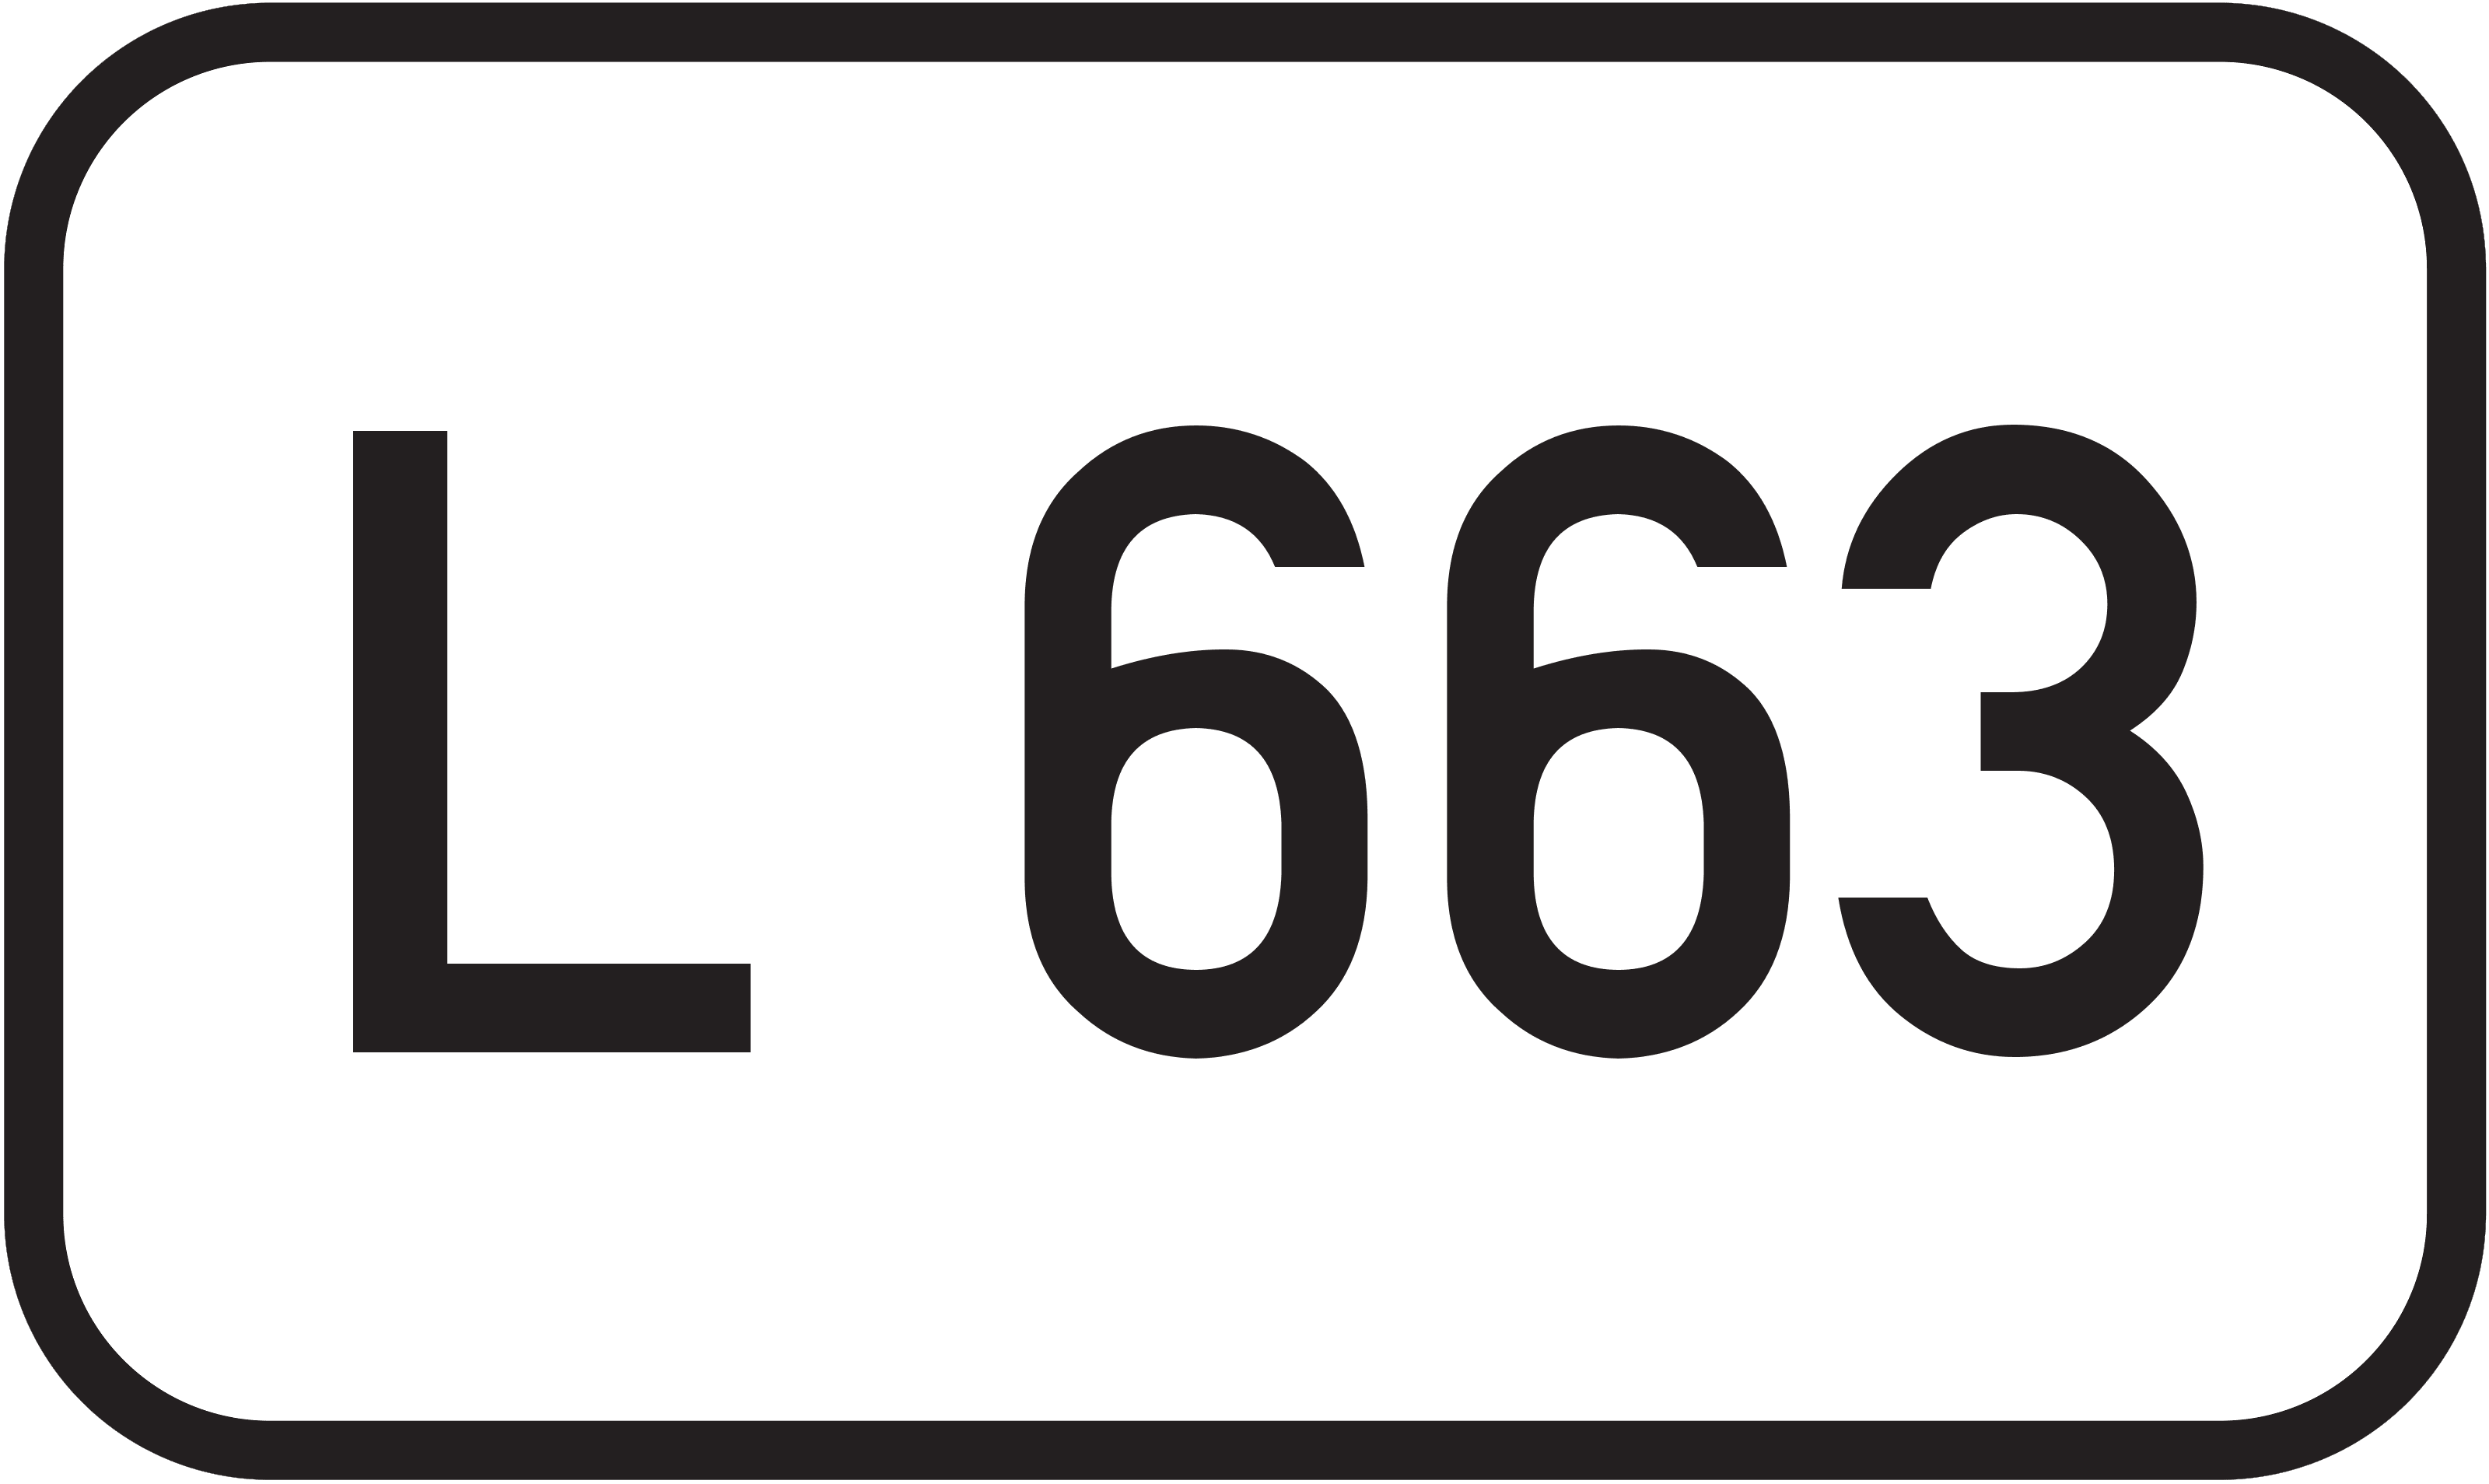 Landesstraße L 663